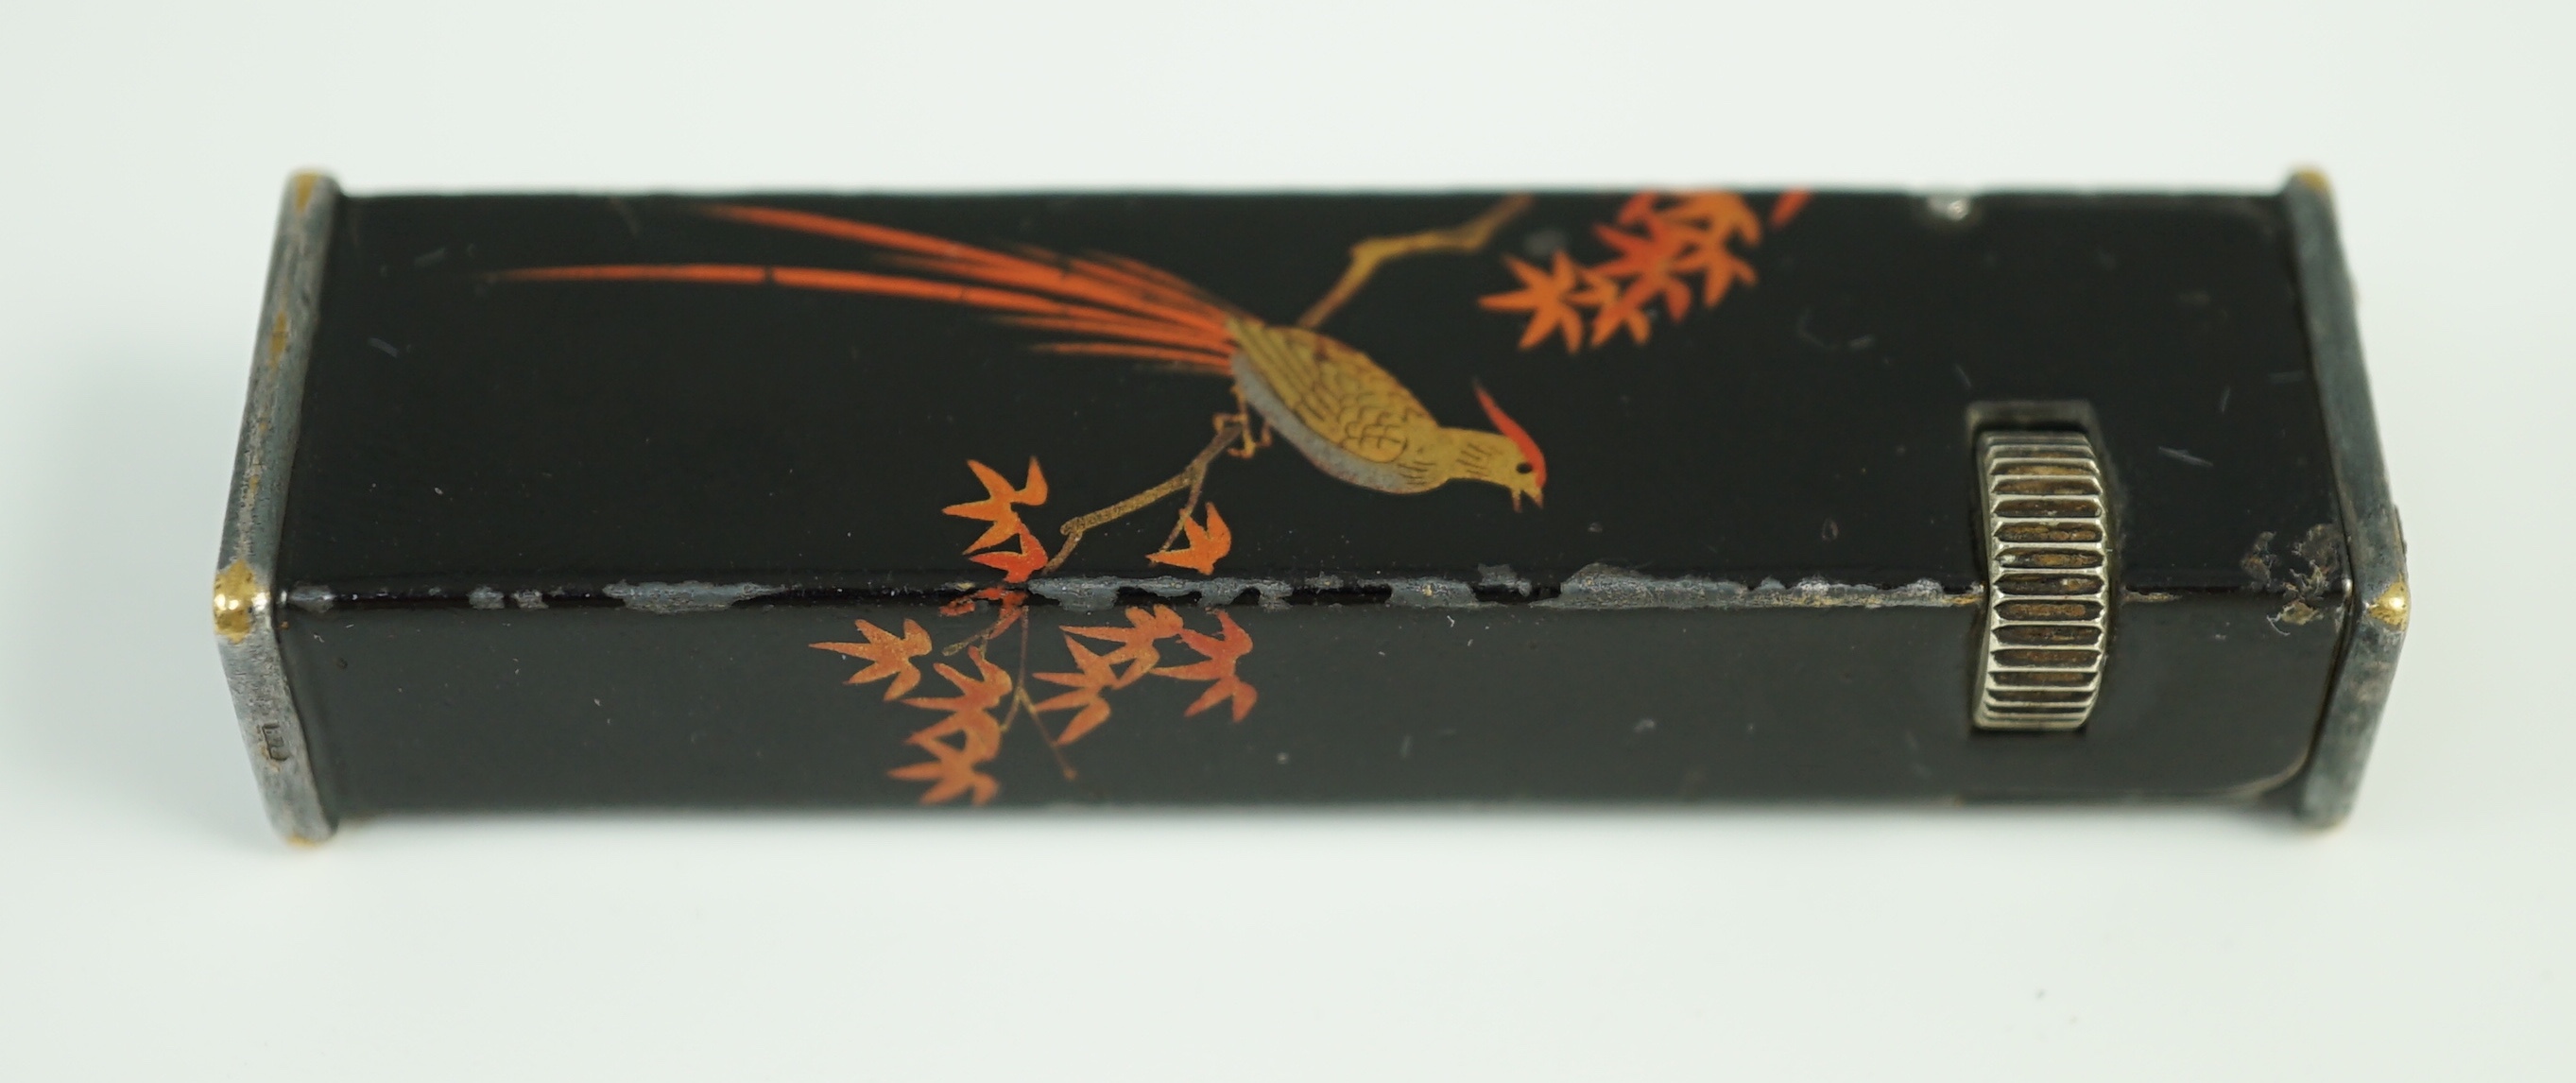 A Dunhill Namiki maki-e (lacquer) tallboy lighter, c.1930, 6.4 cm high